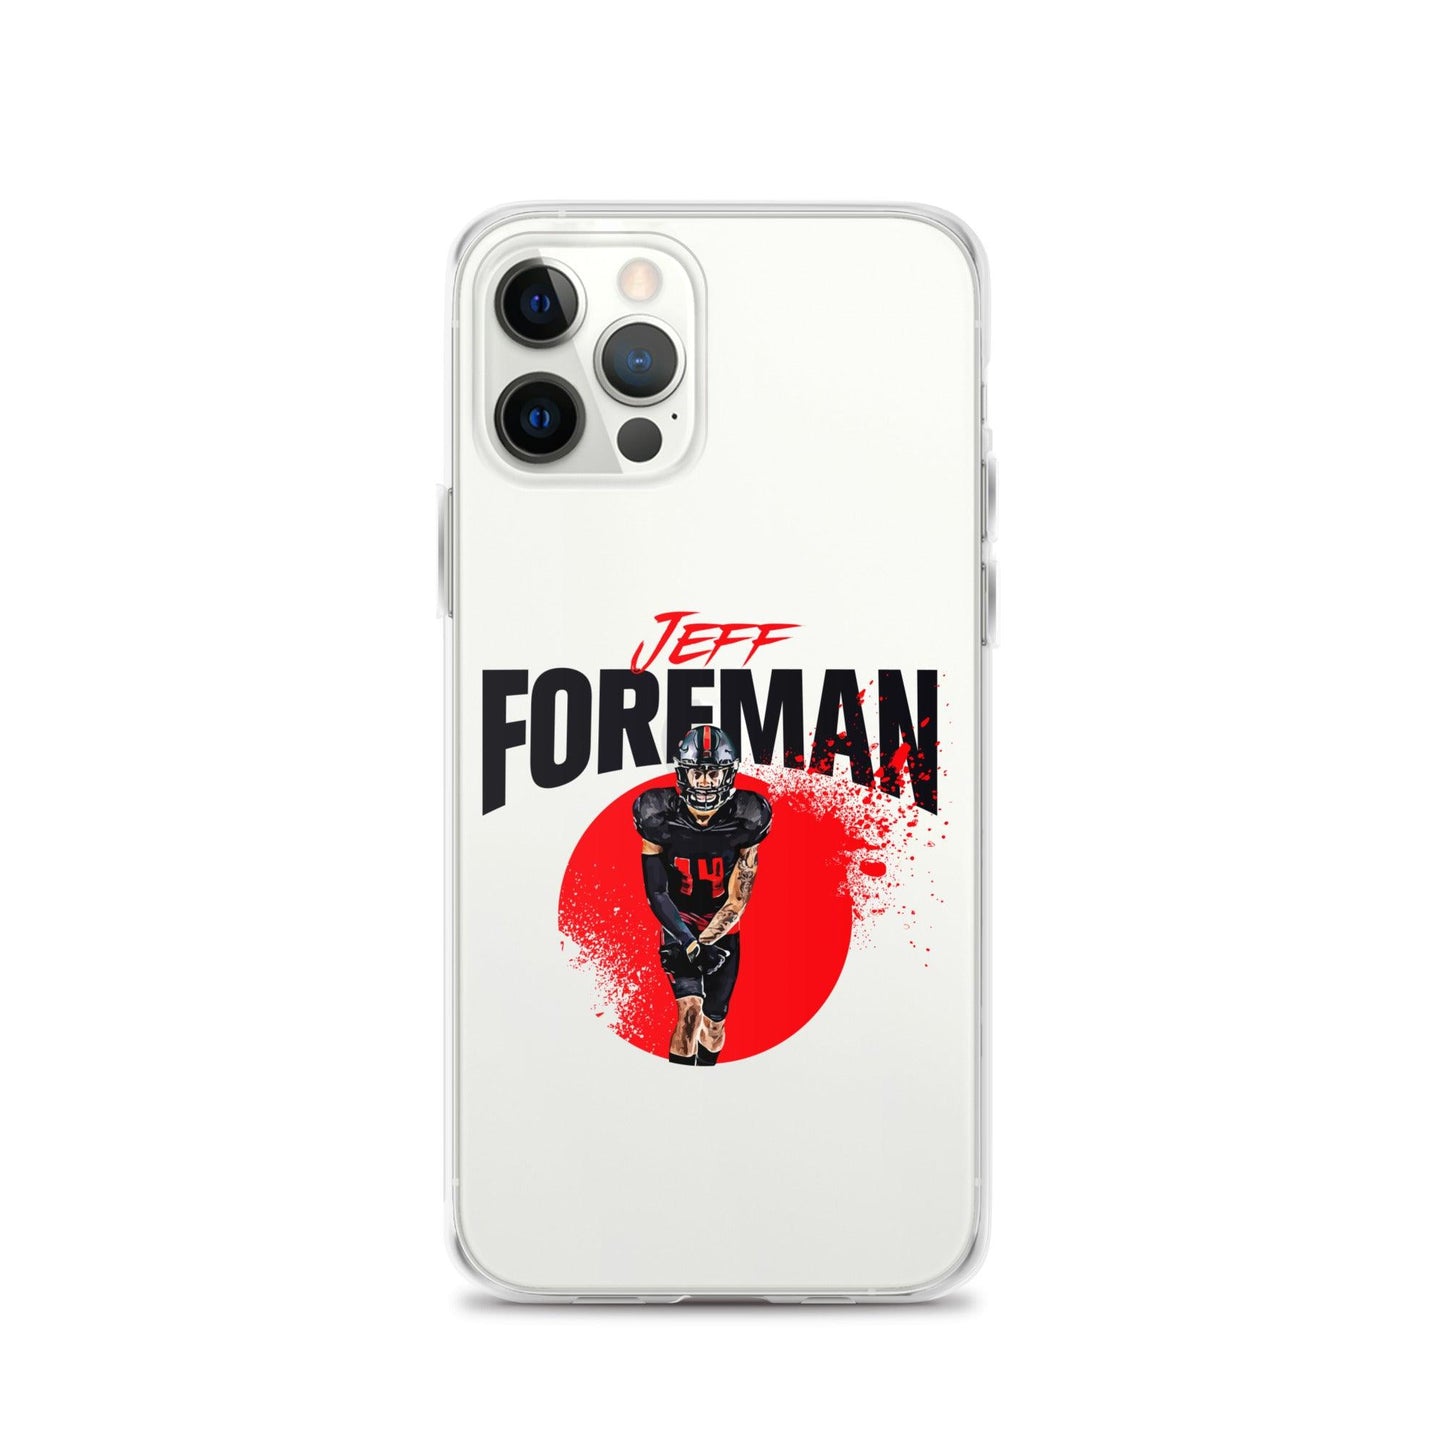 Jeff Foreman "Splash" iPhone Case - Fan Arch